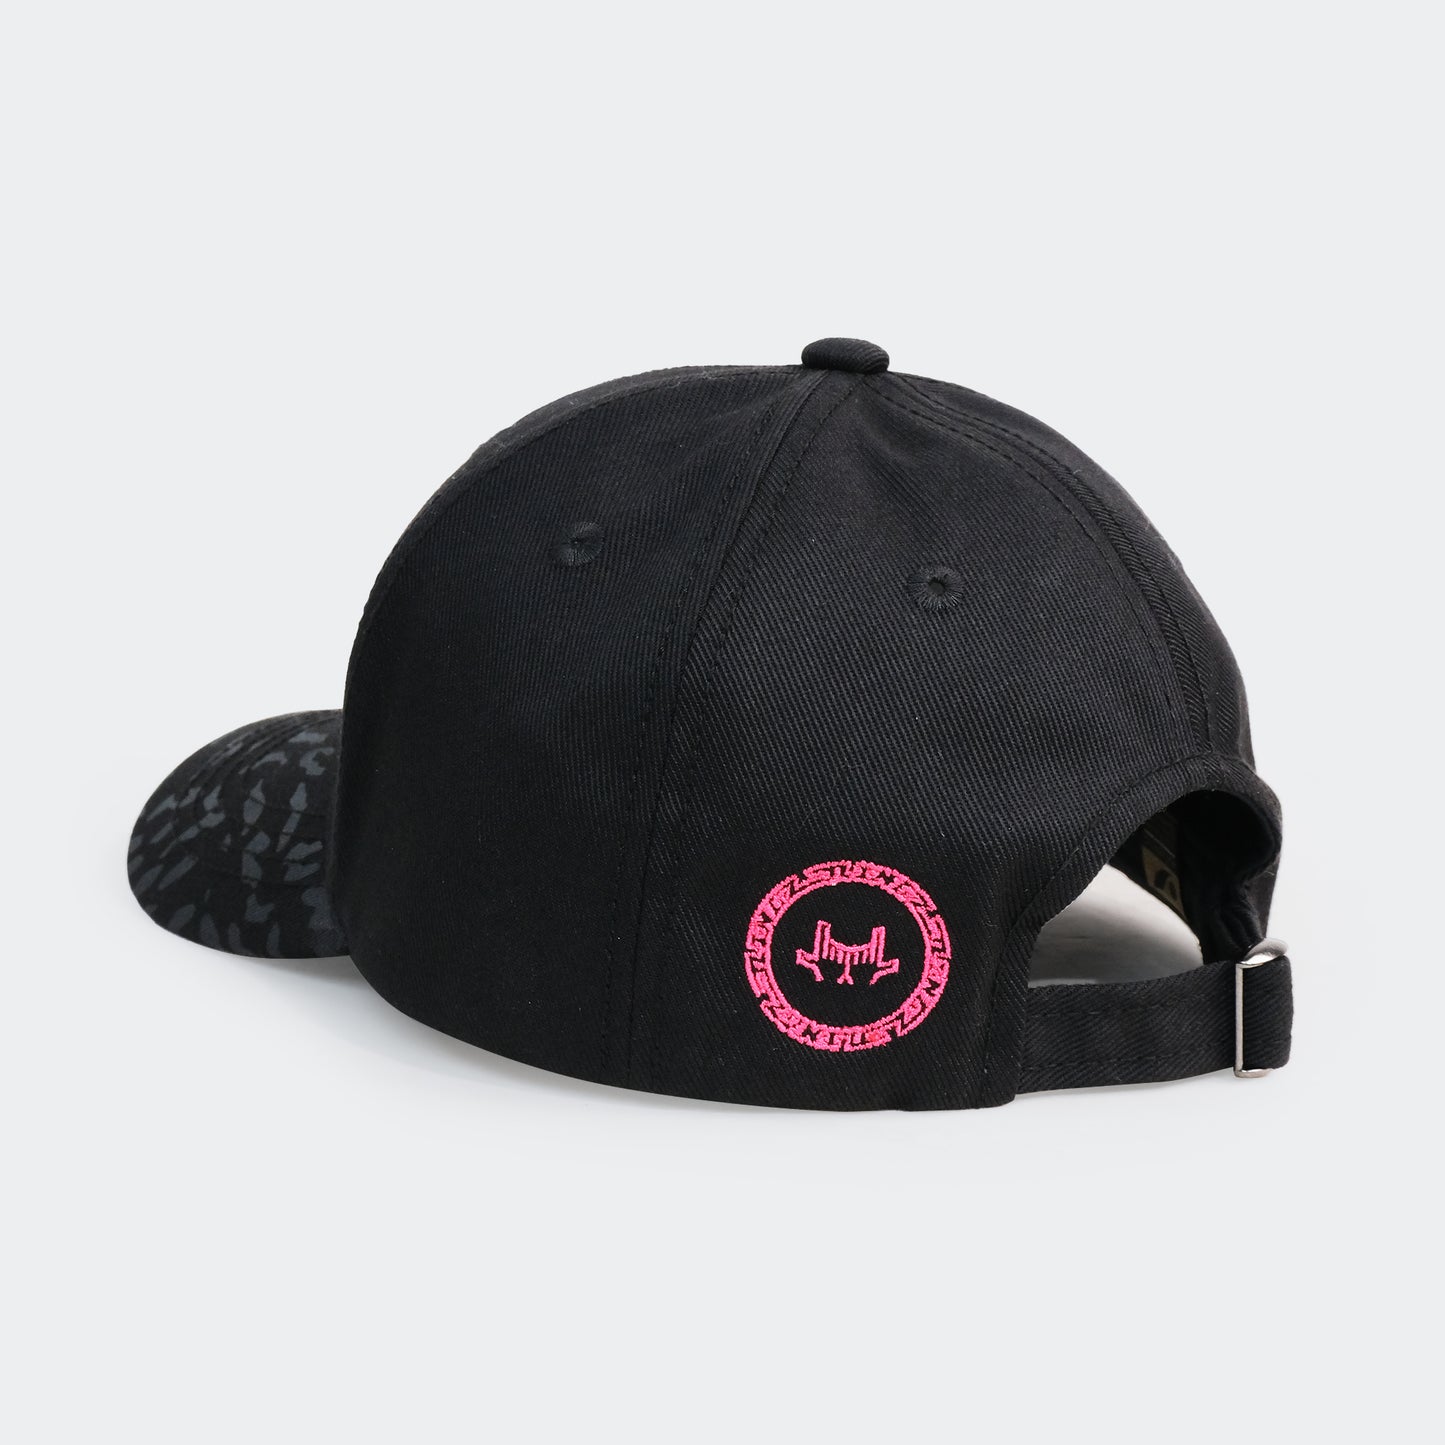 Concave x JLingz Cap - Black/Pink